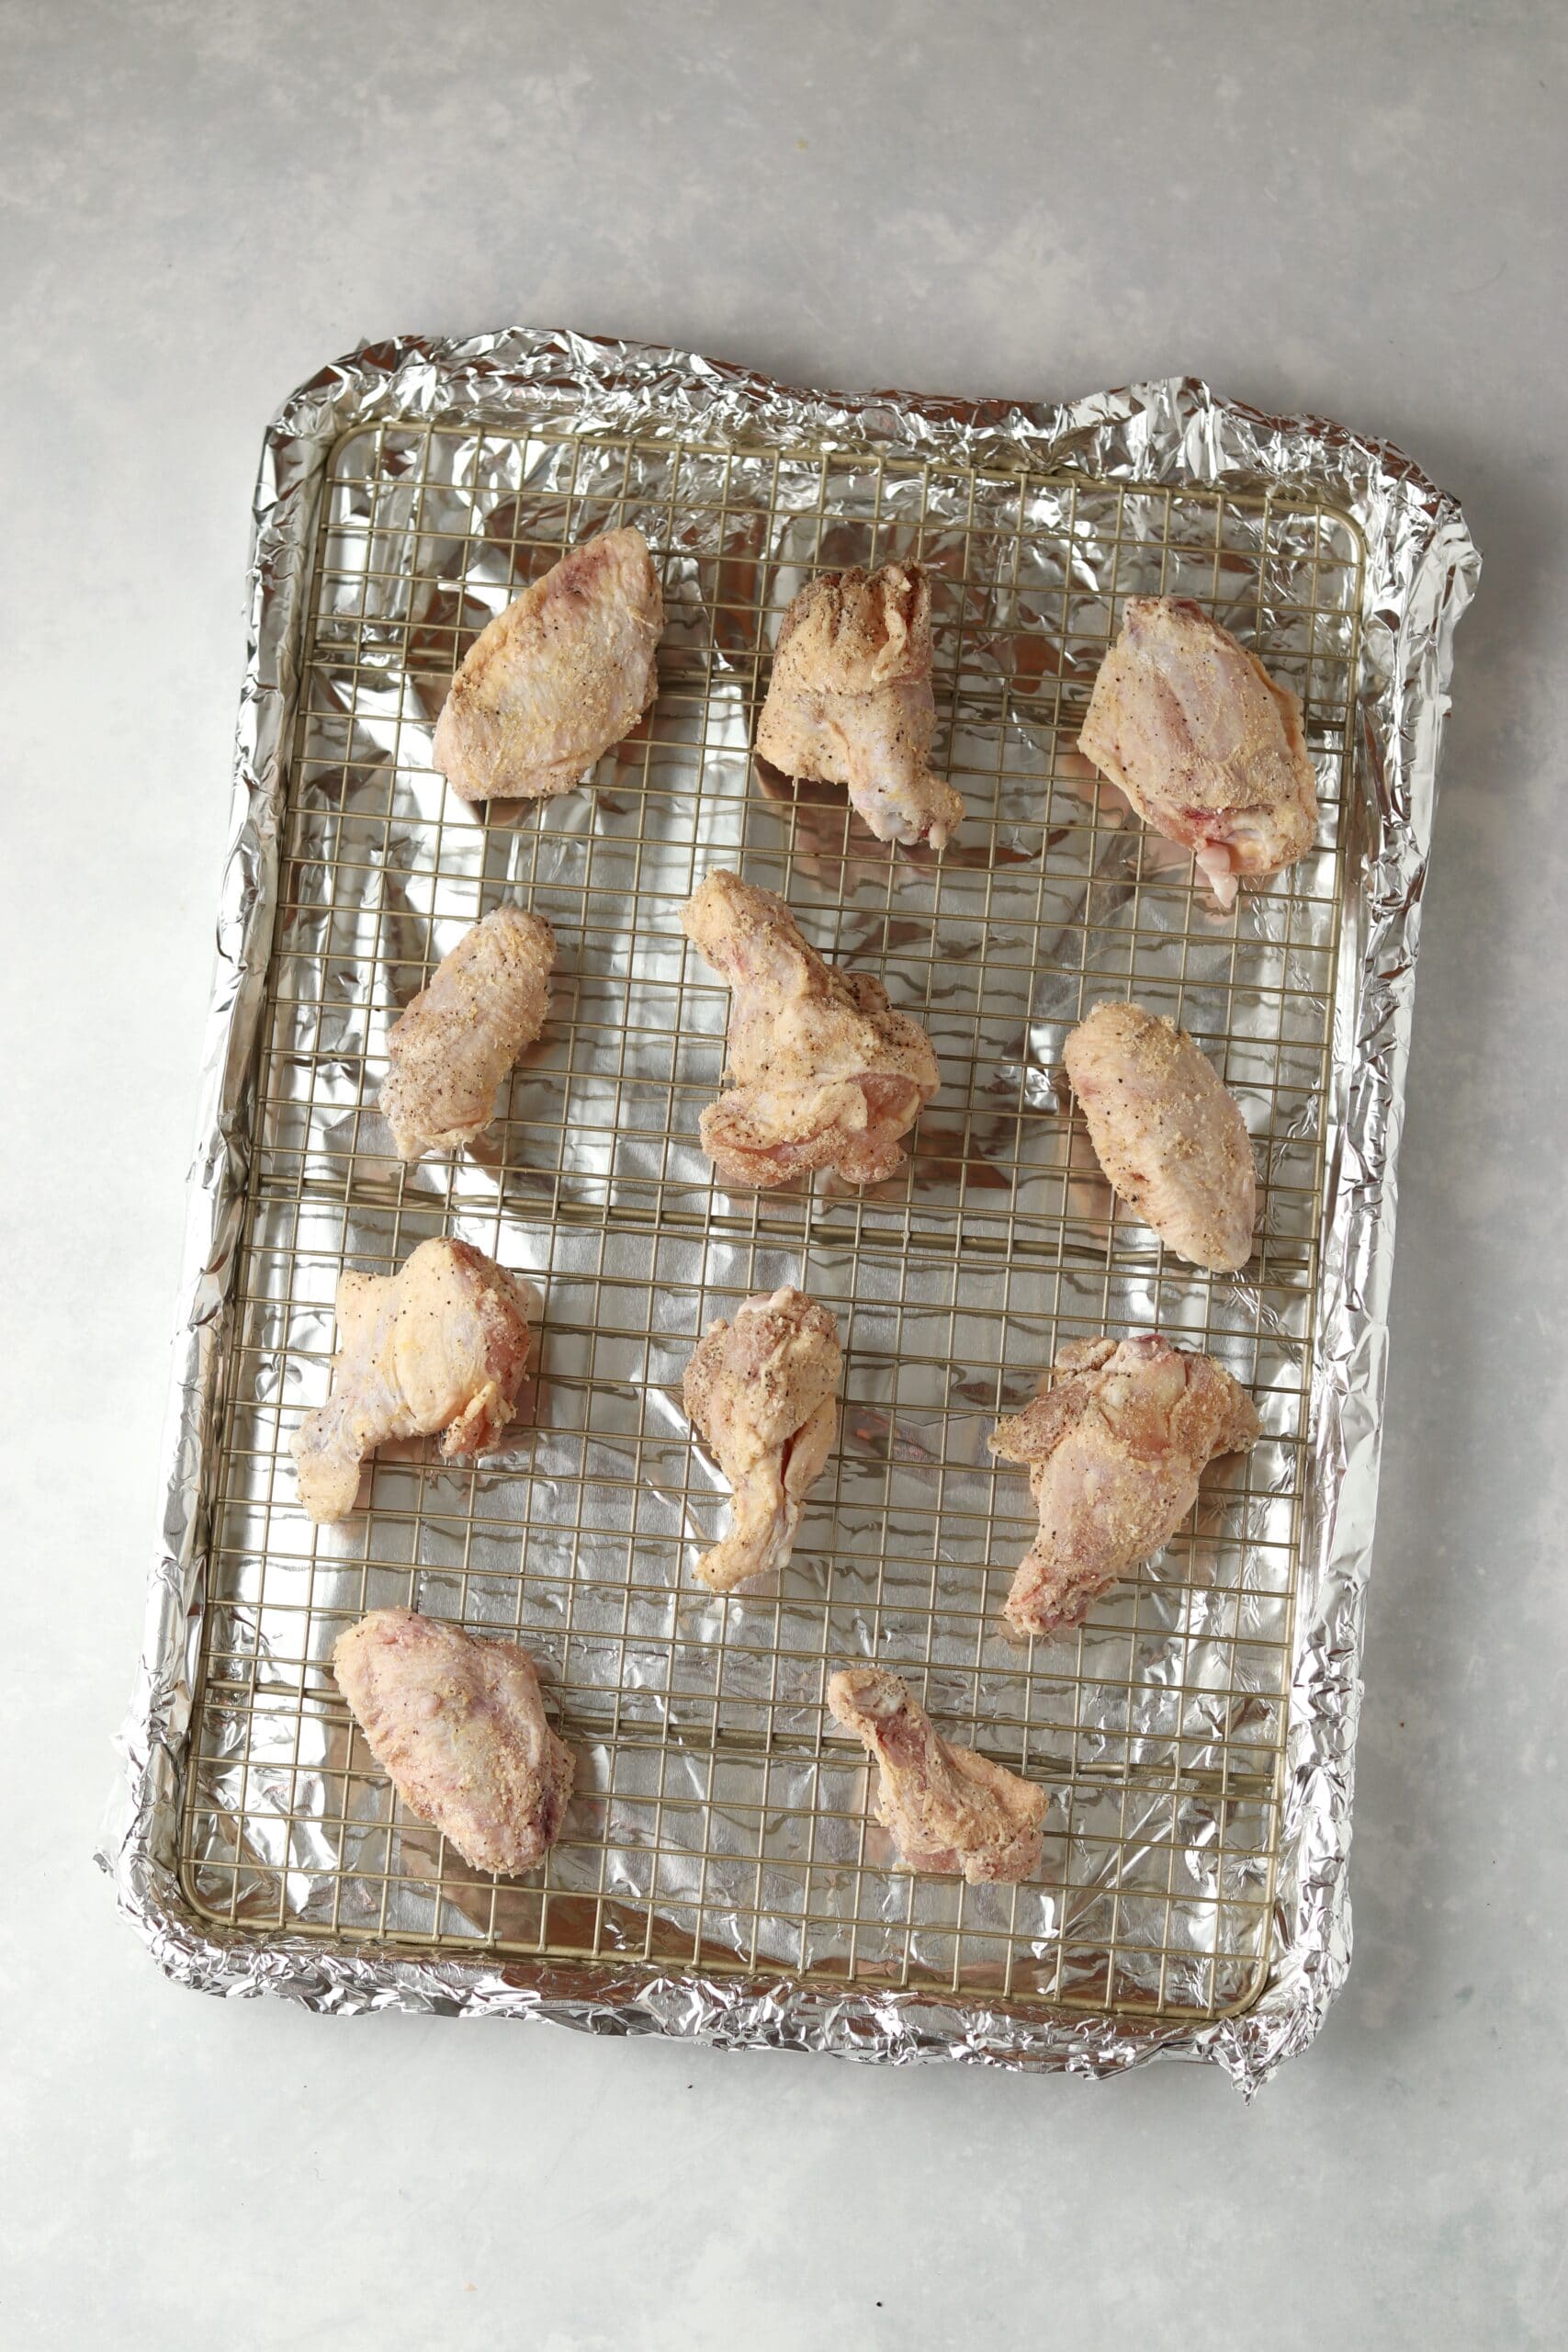 raw chicken wings on baking sheet